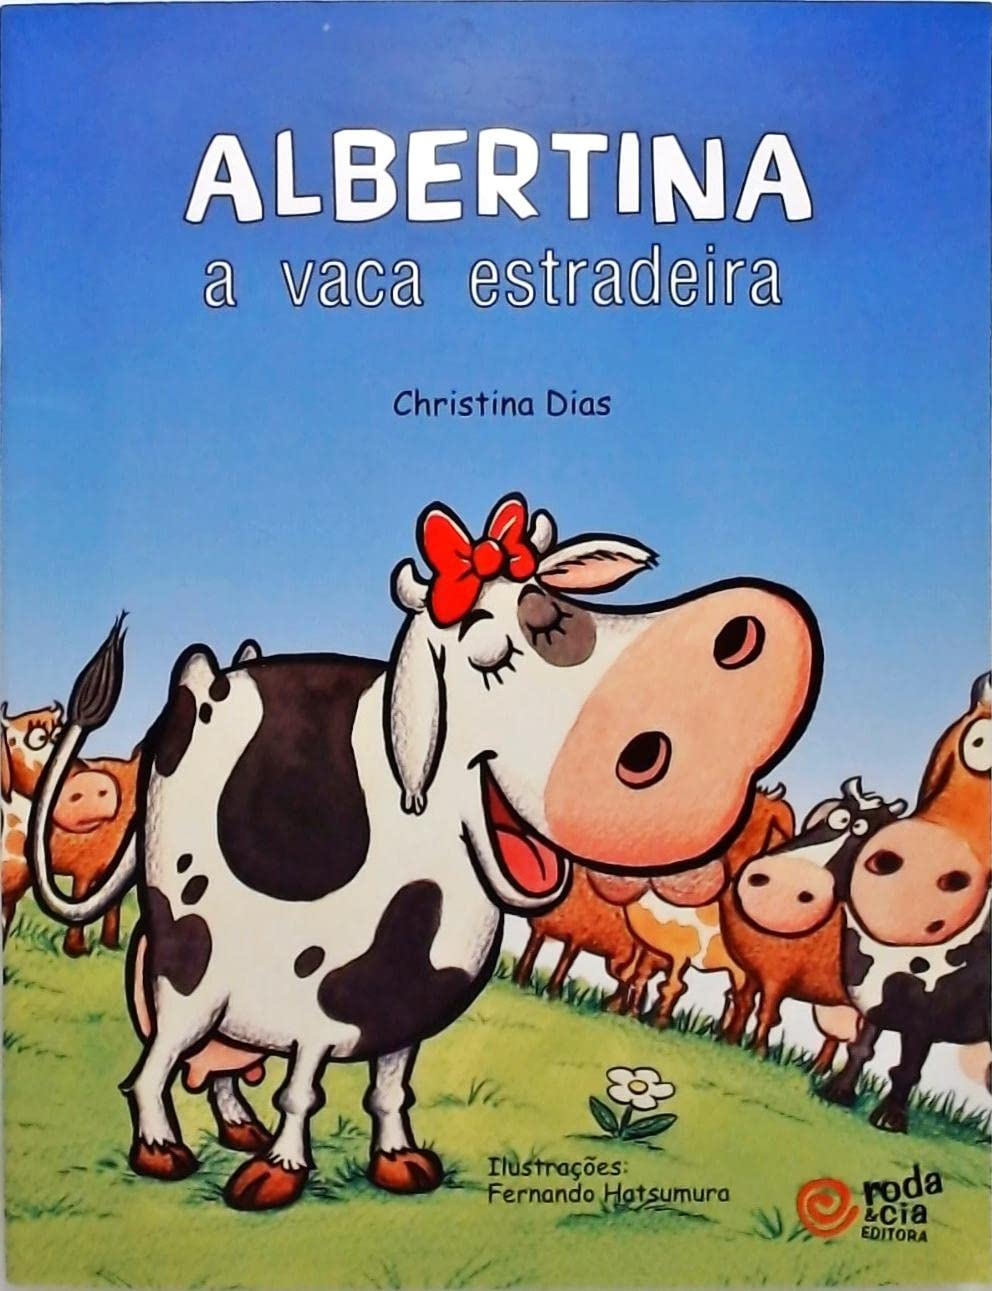 Albertina, a vaca estradeira